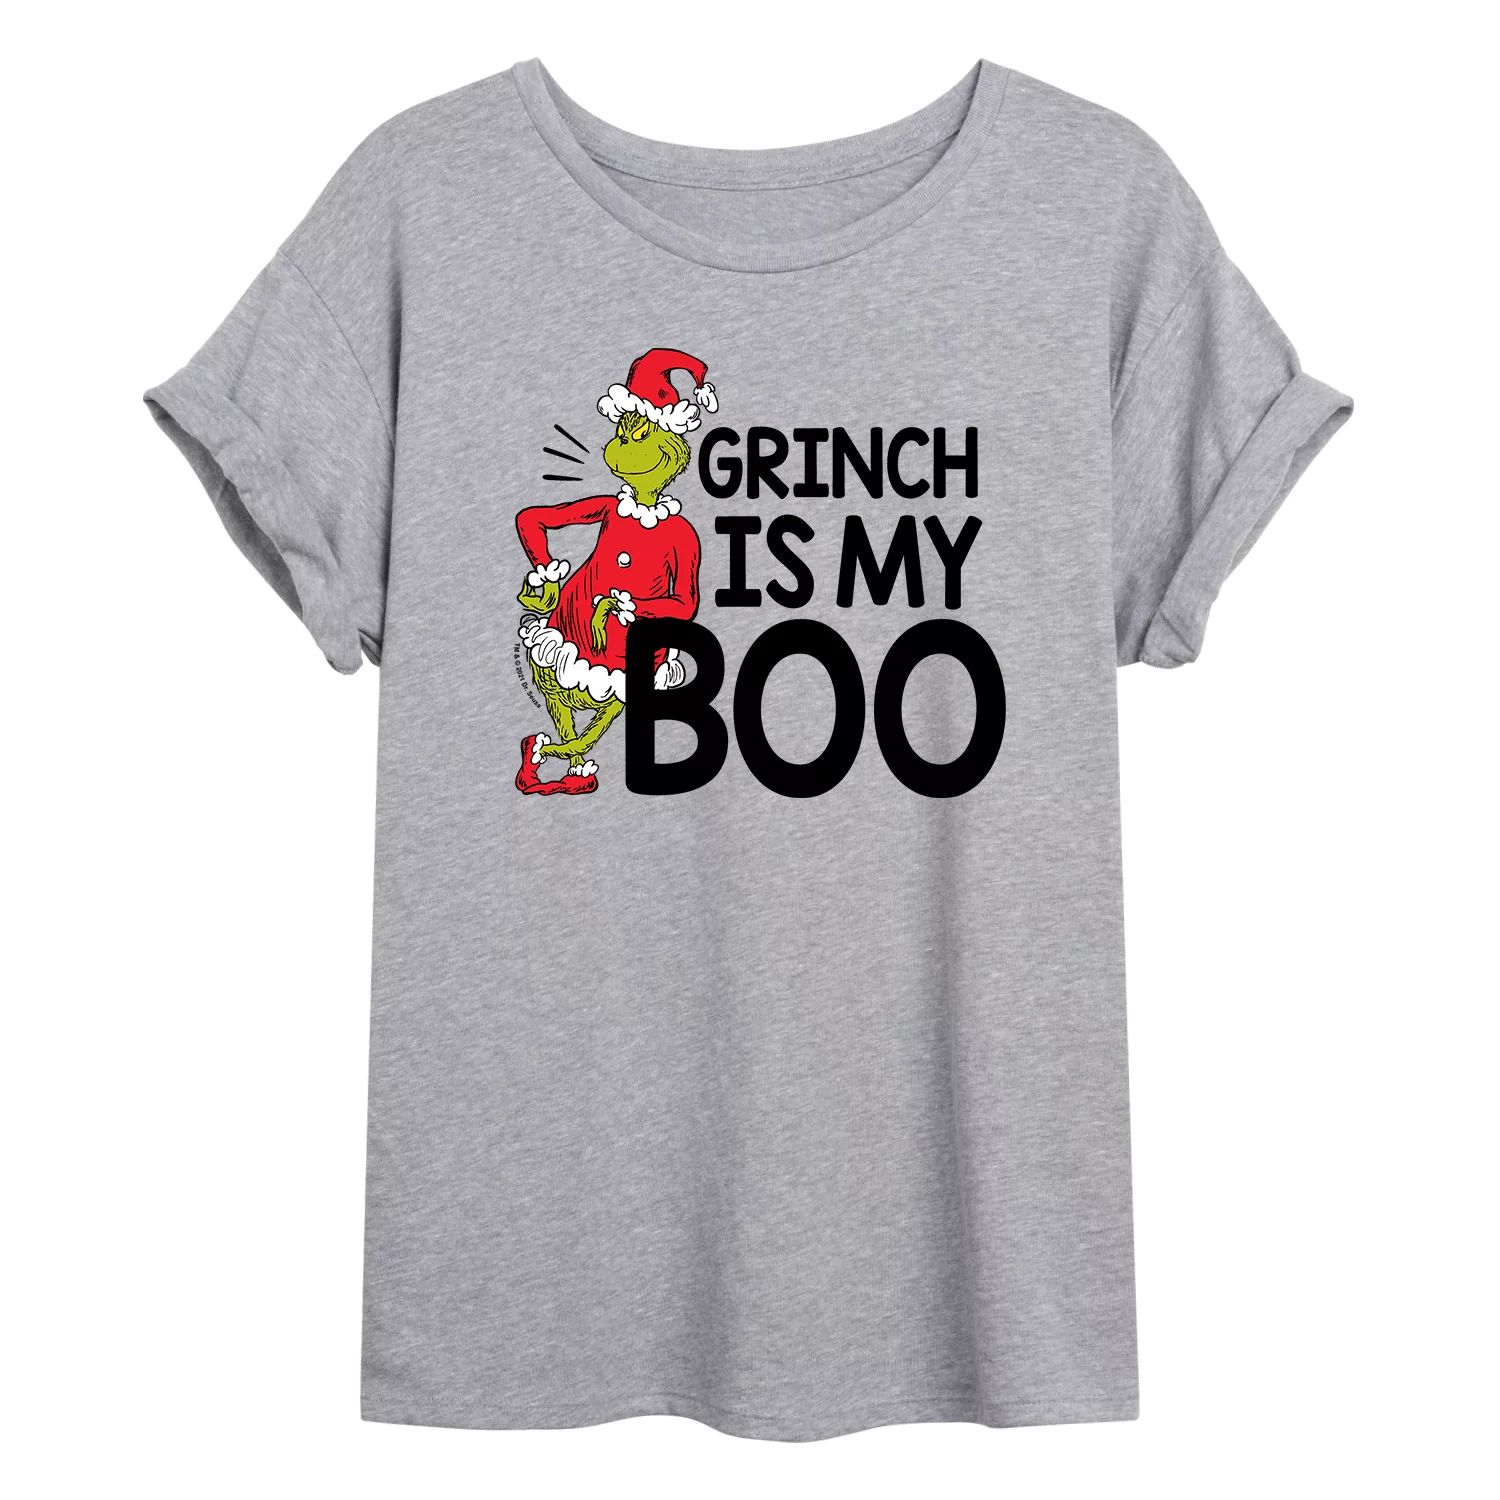 Огромная футболка с рисунком «Доктор Сьюз Гринч» для юниоров — My Boo Licensed Character фото